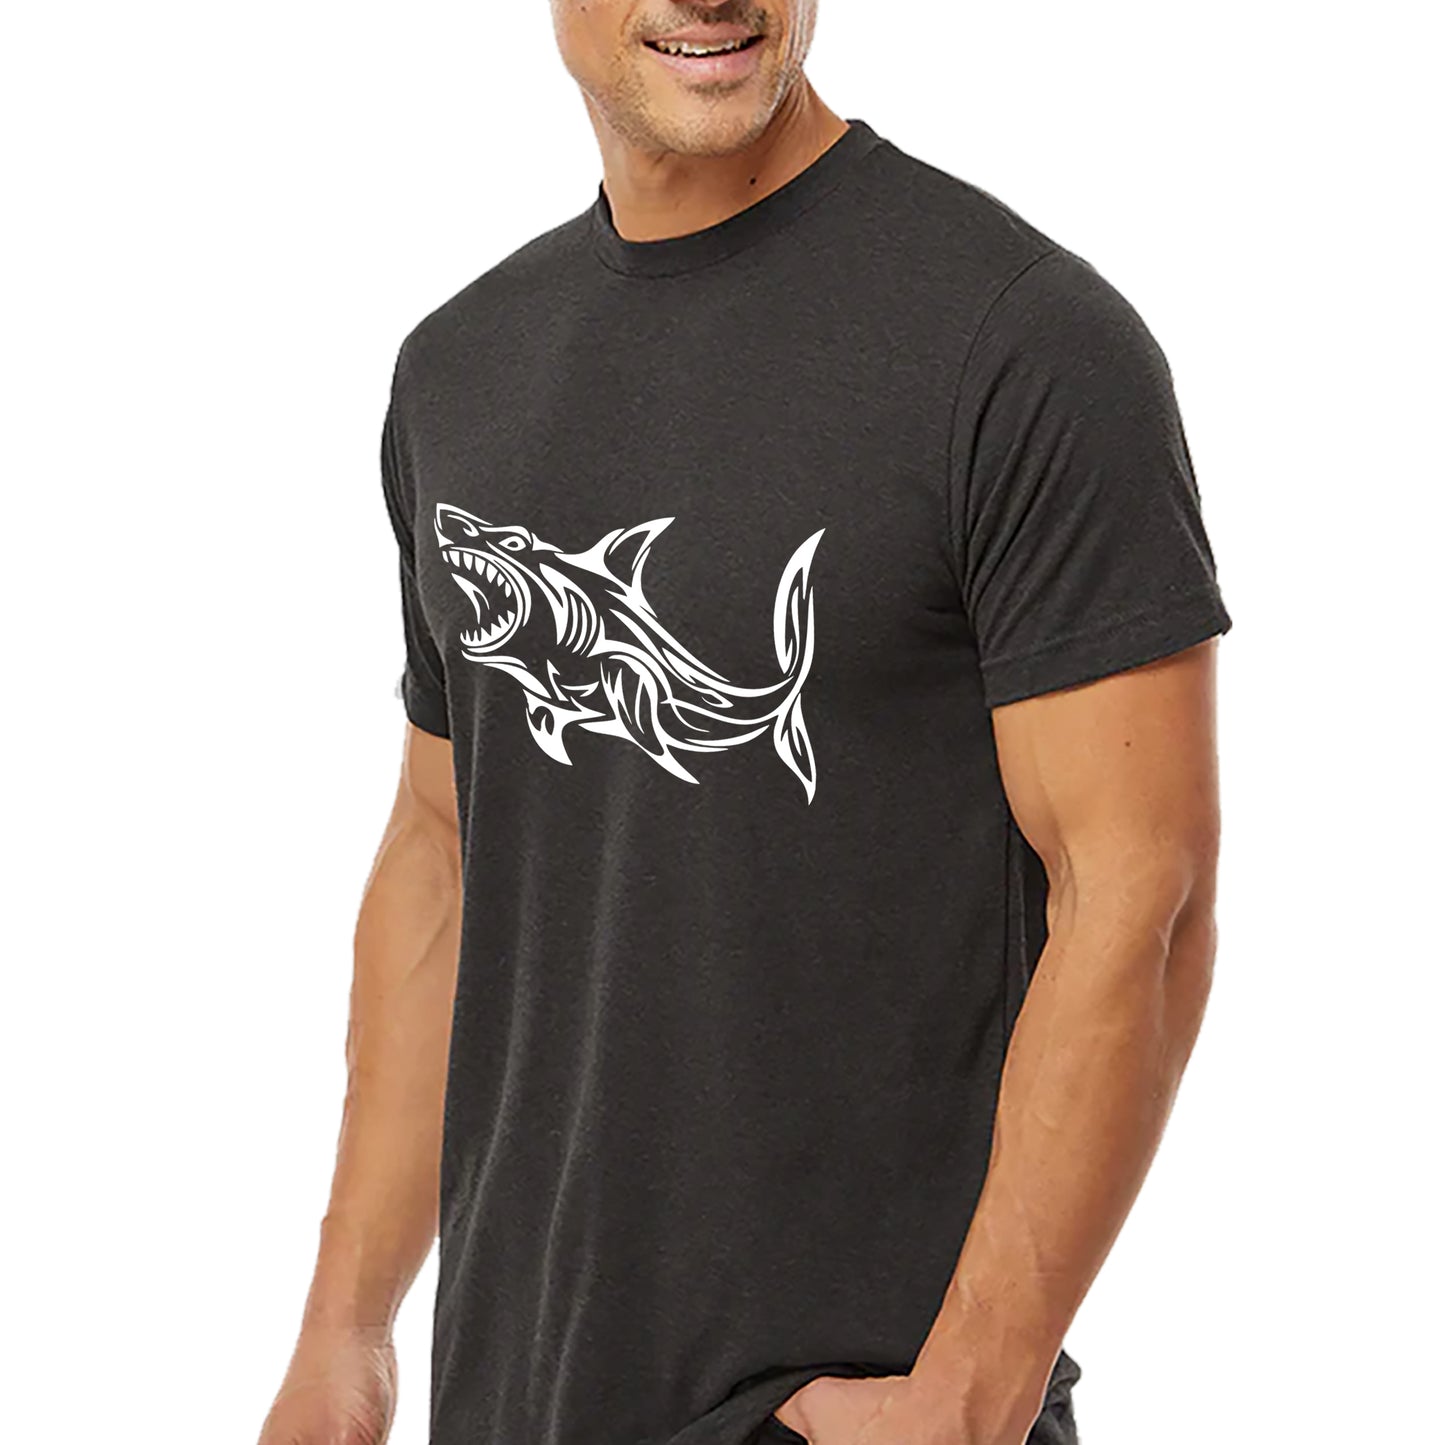 Calligraphic Shark T-shirt